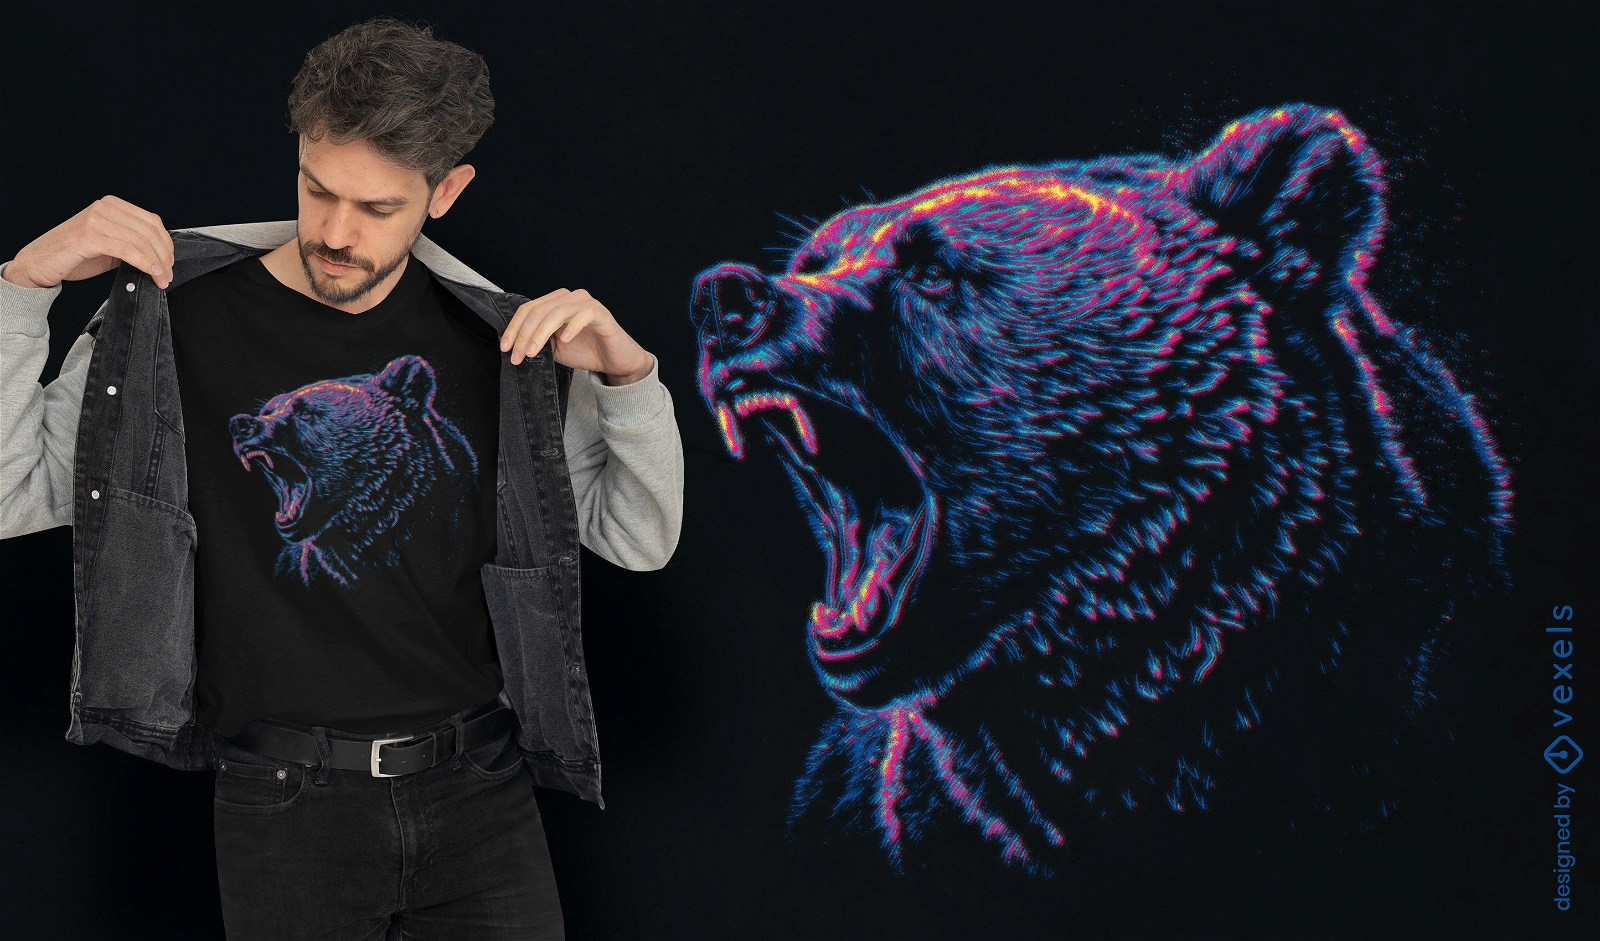 Dise?o de camiseta de oso grizzly rugiente.